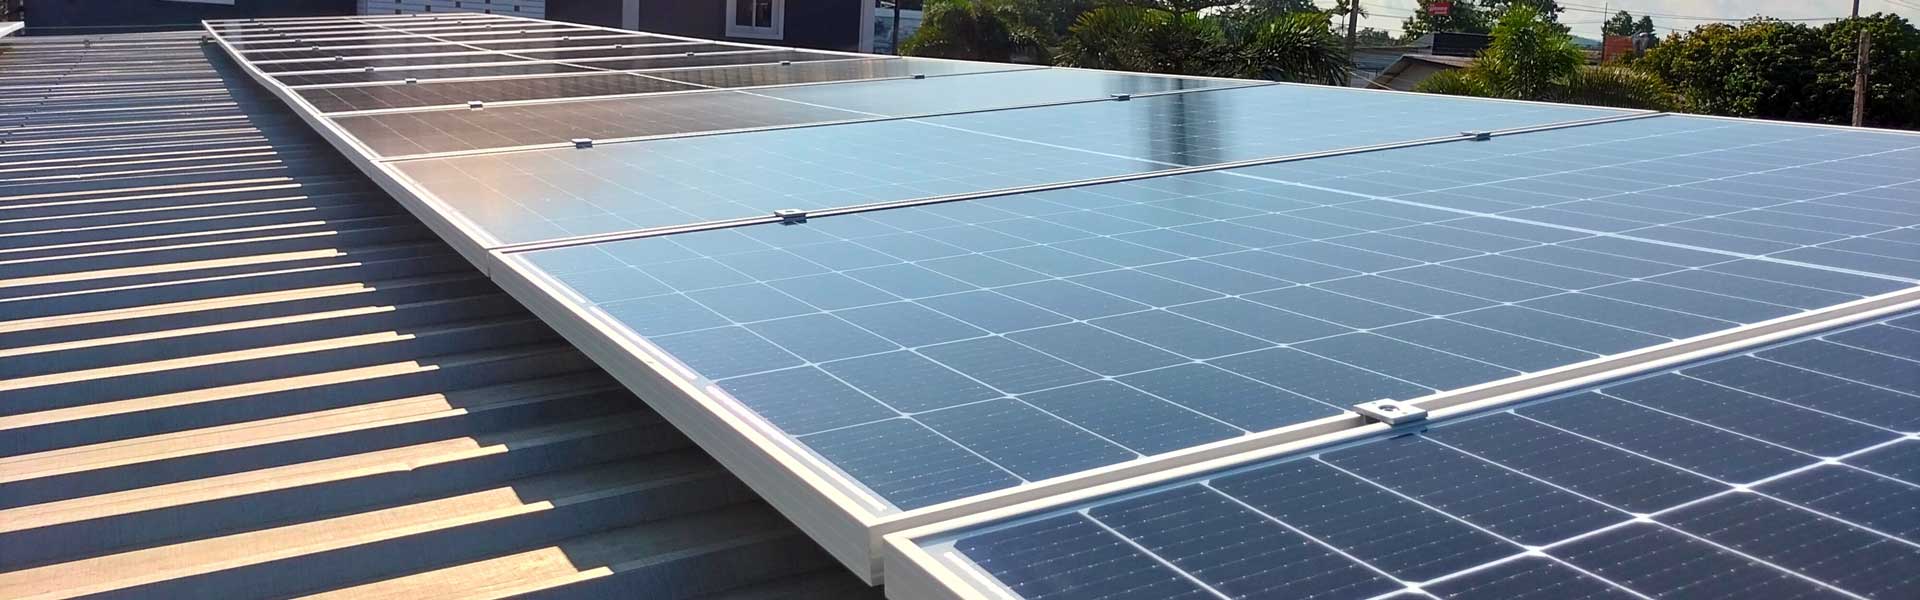 Installation de panneaux solaires 3000w